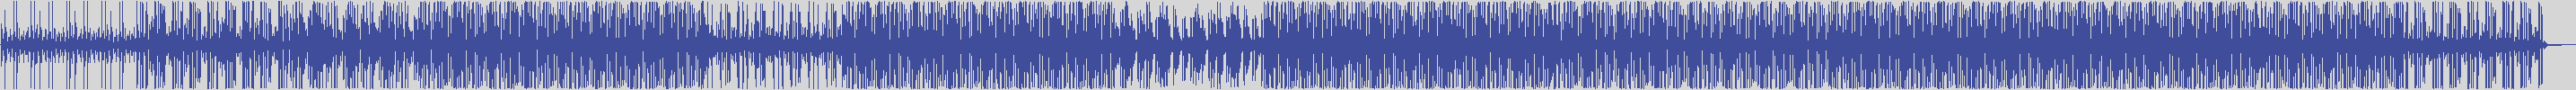 noclouds_chillout [NOC124] Shin Elto - Deep Mundo [Original Mix] audio wave form